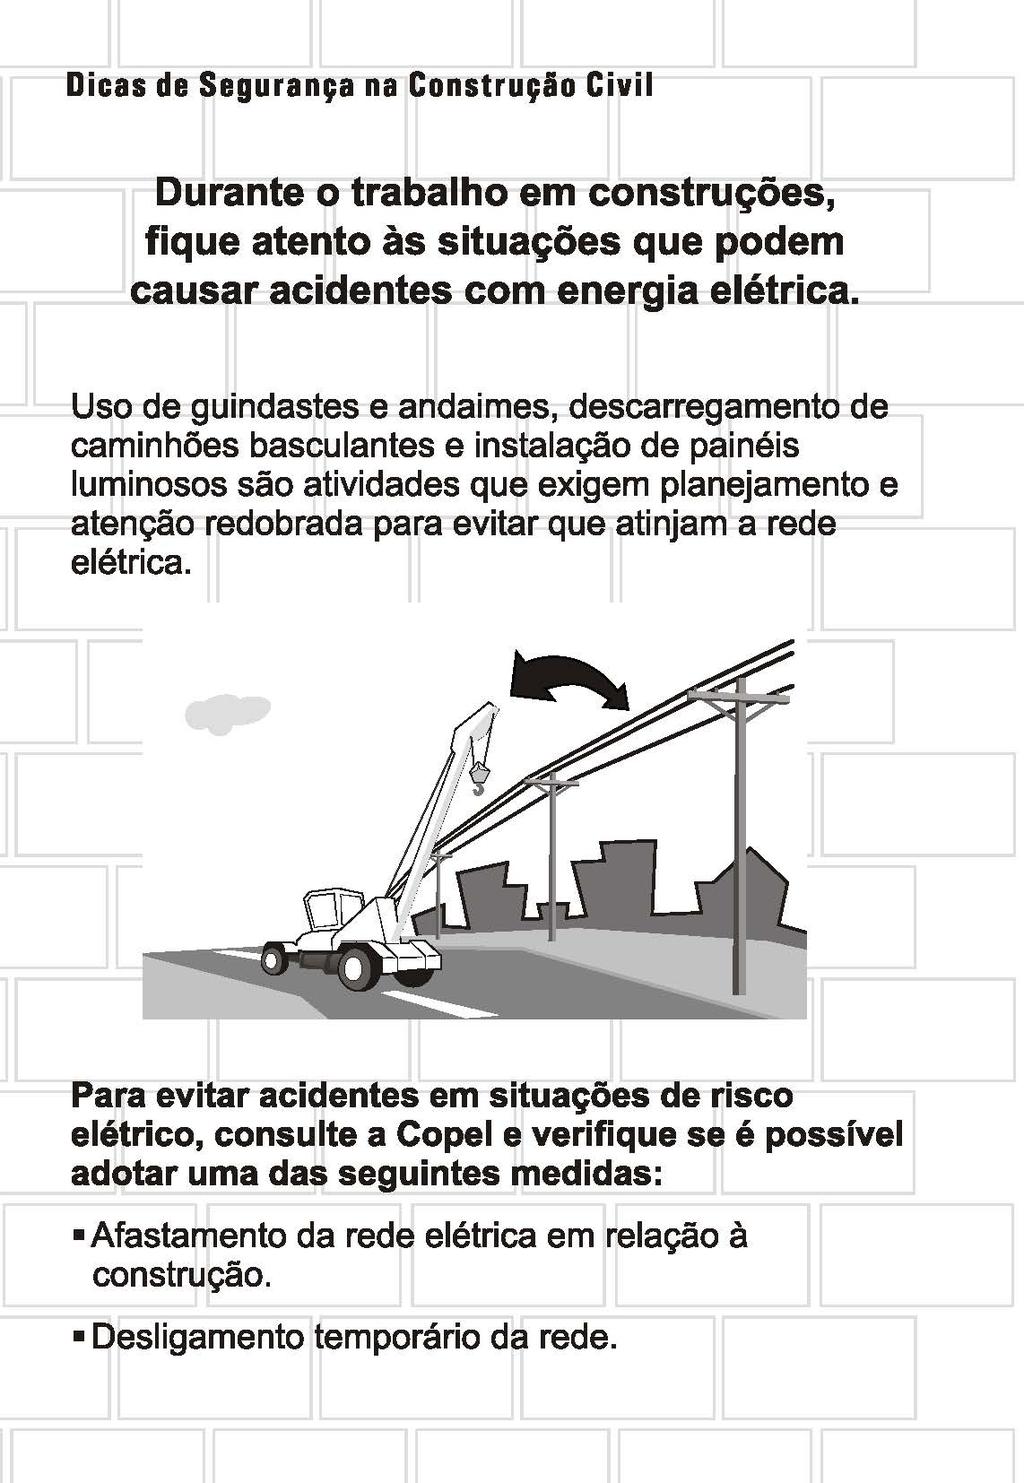 Dicas de Segurança na Construçio Civil Durante o trabalho em construções, fique atento às situações que podem causar acidentes com energia elétrica.